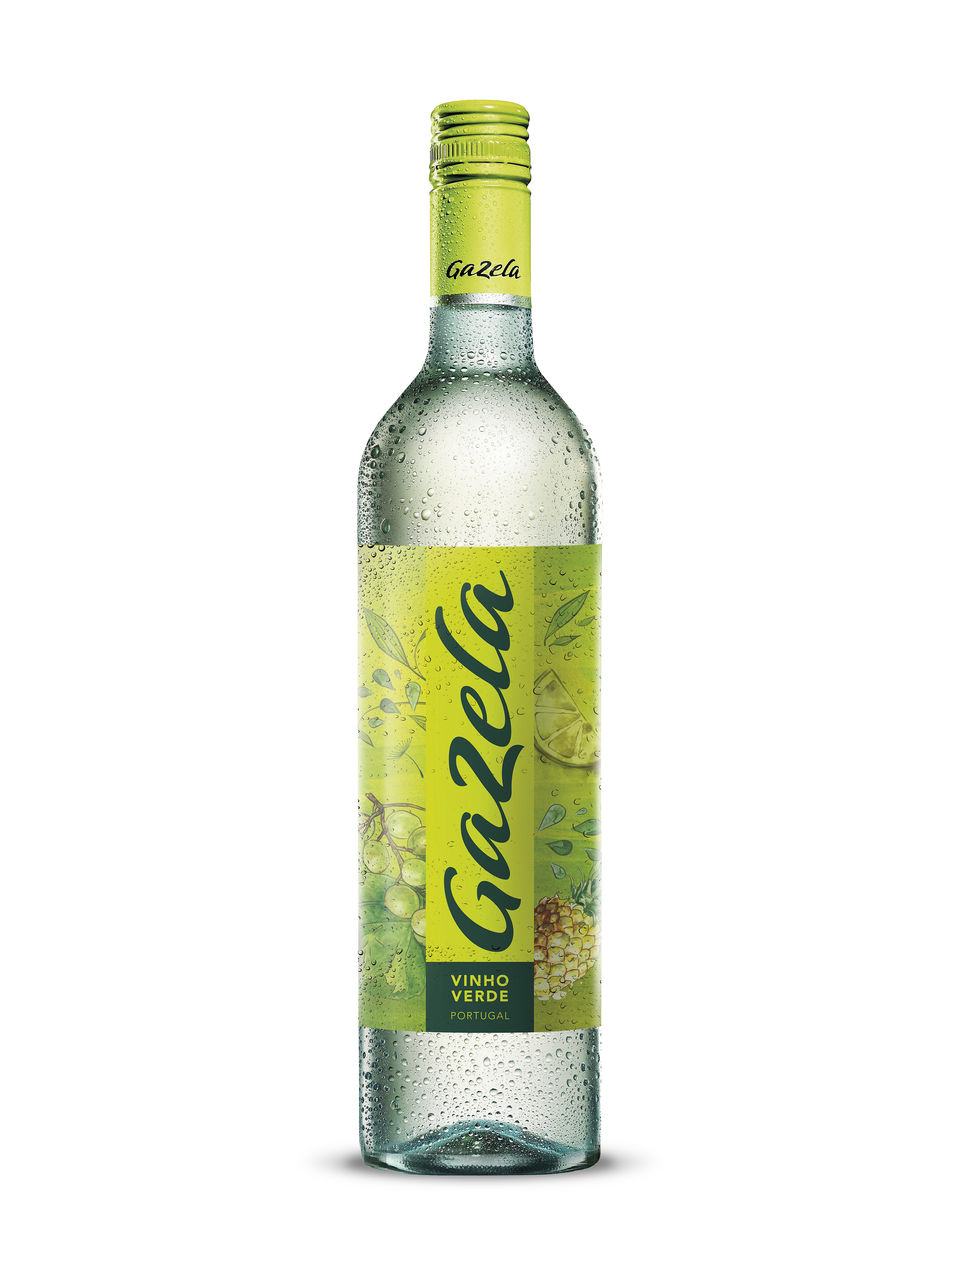 Sogrape Gazela Vinho Verde - View Image 1